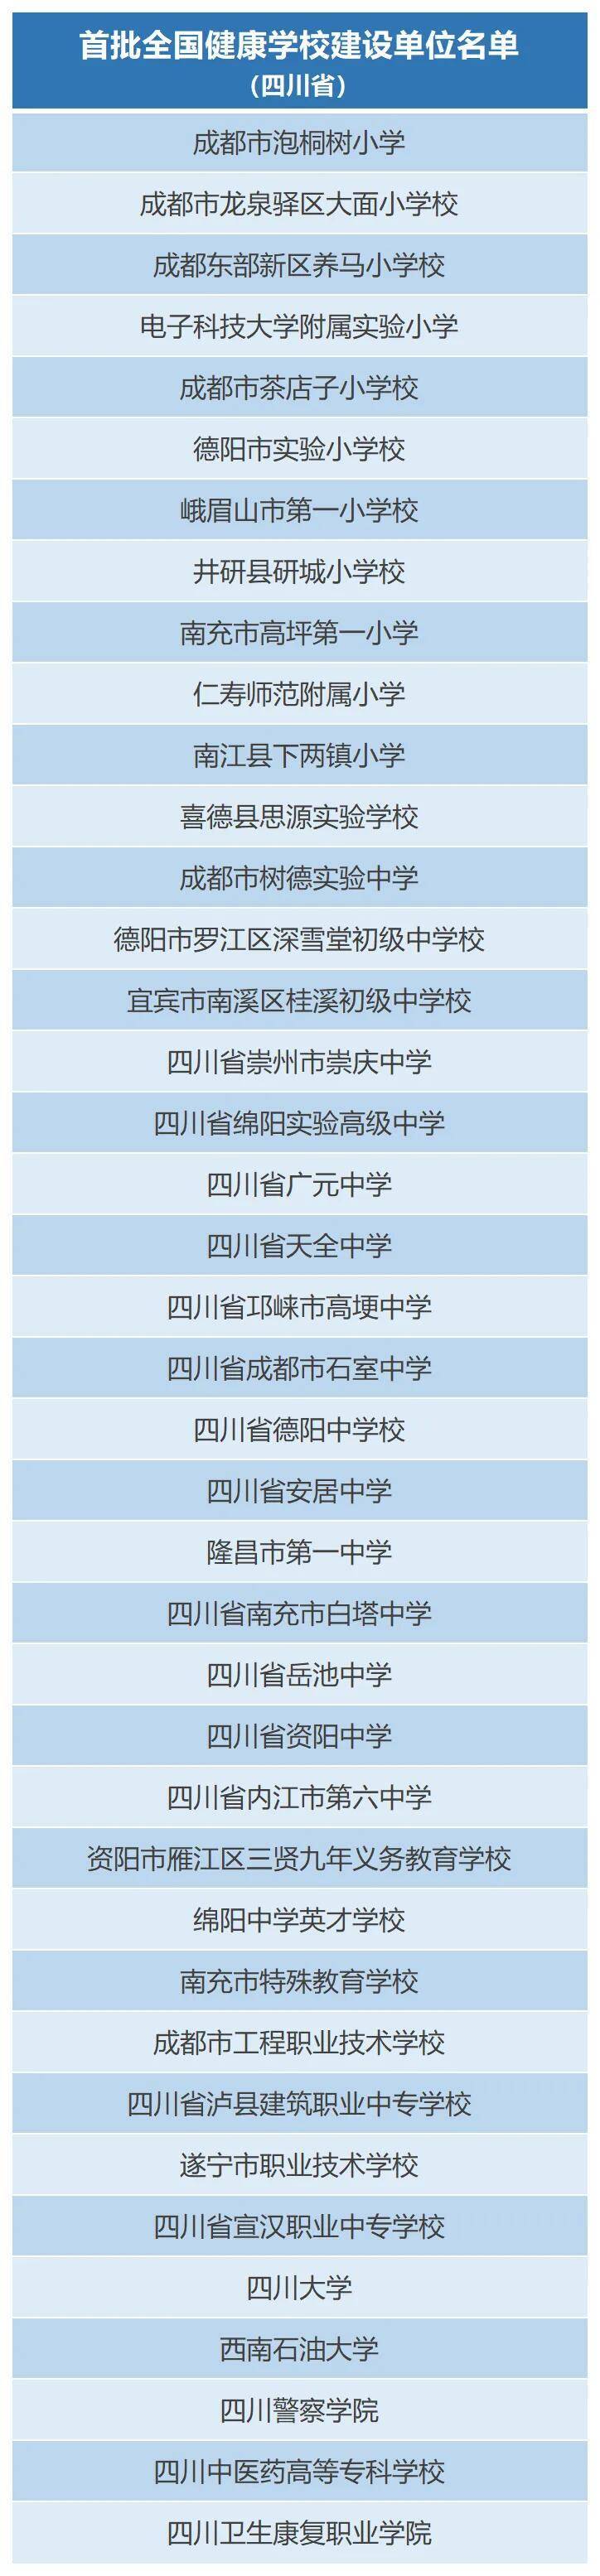 四川40所学校入选首批全国健康学校建设单位名单